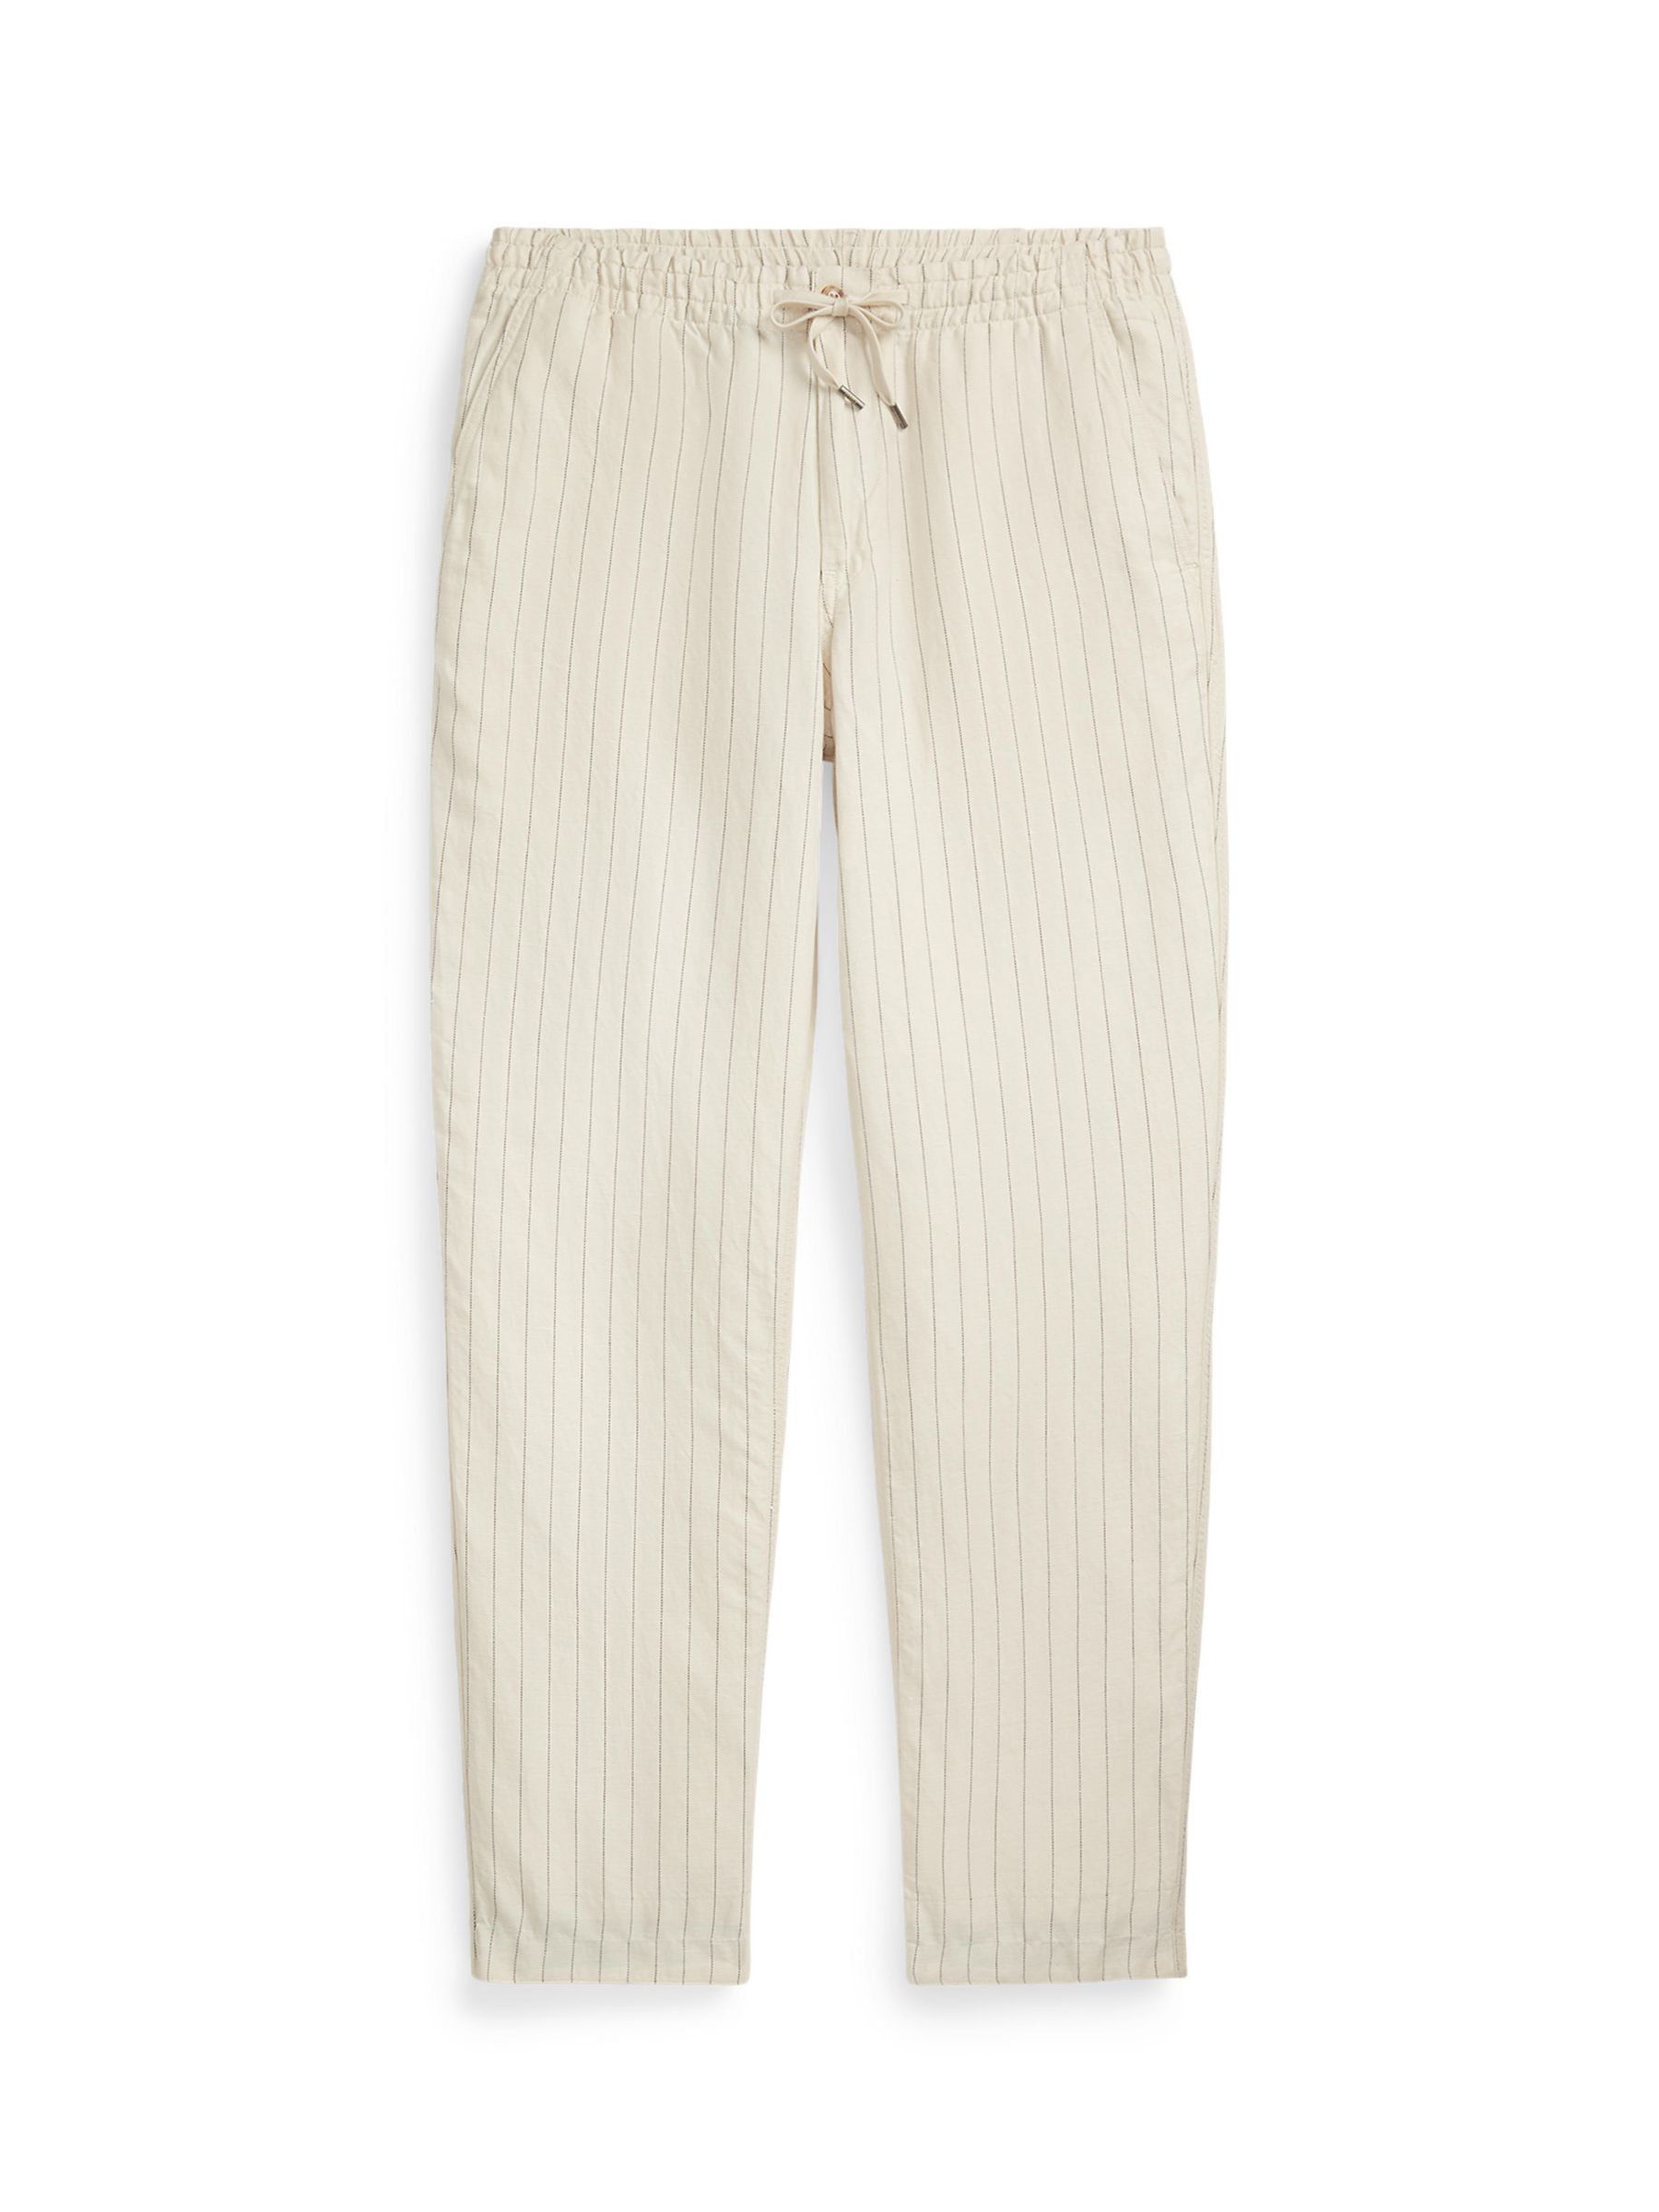 Polo Ralph Lauren Prepster Striped Linen Blend Trousers, Beige at John ...